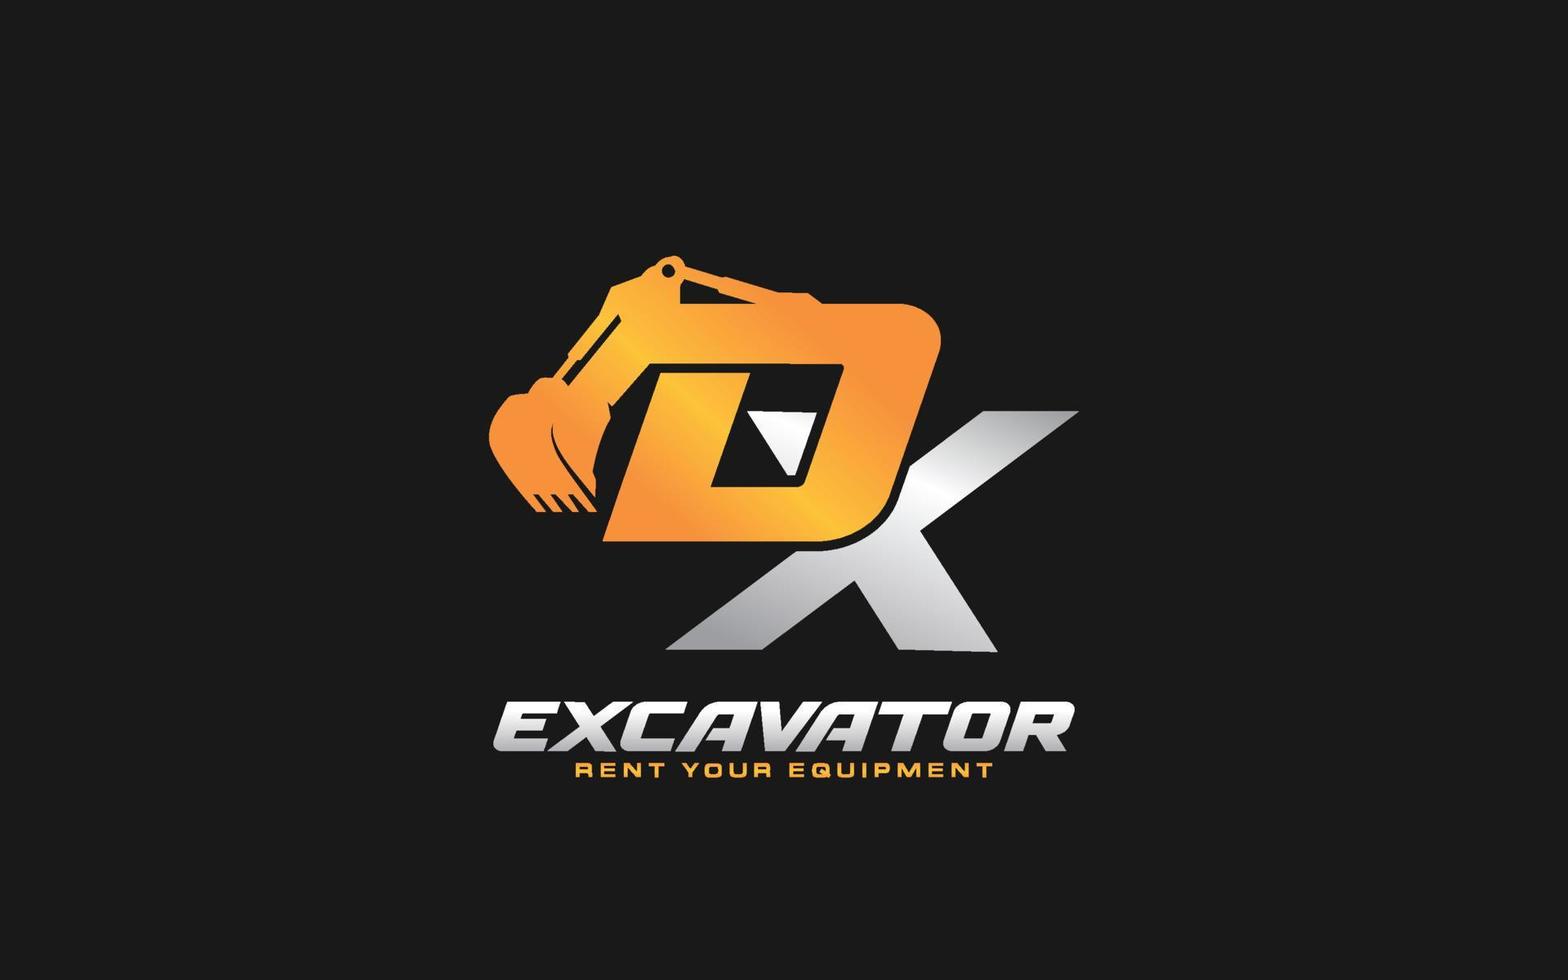 Excavadora de logotipo dx para empresa constructora. ilustración de vector de plantilla de equipo pesado para su marca.